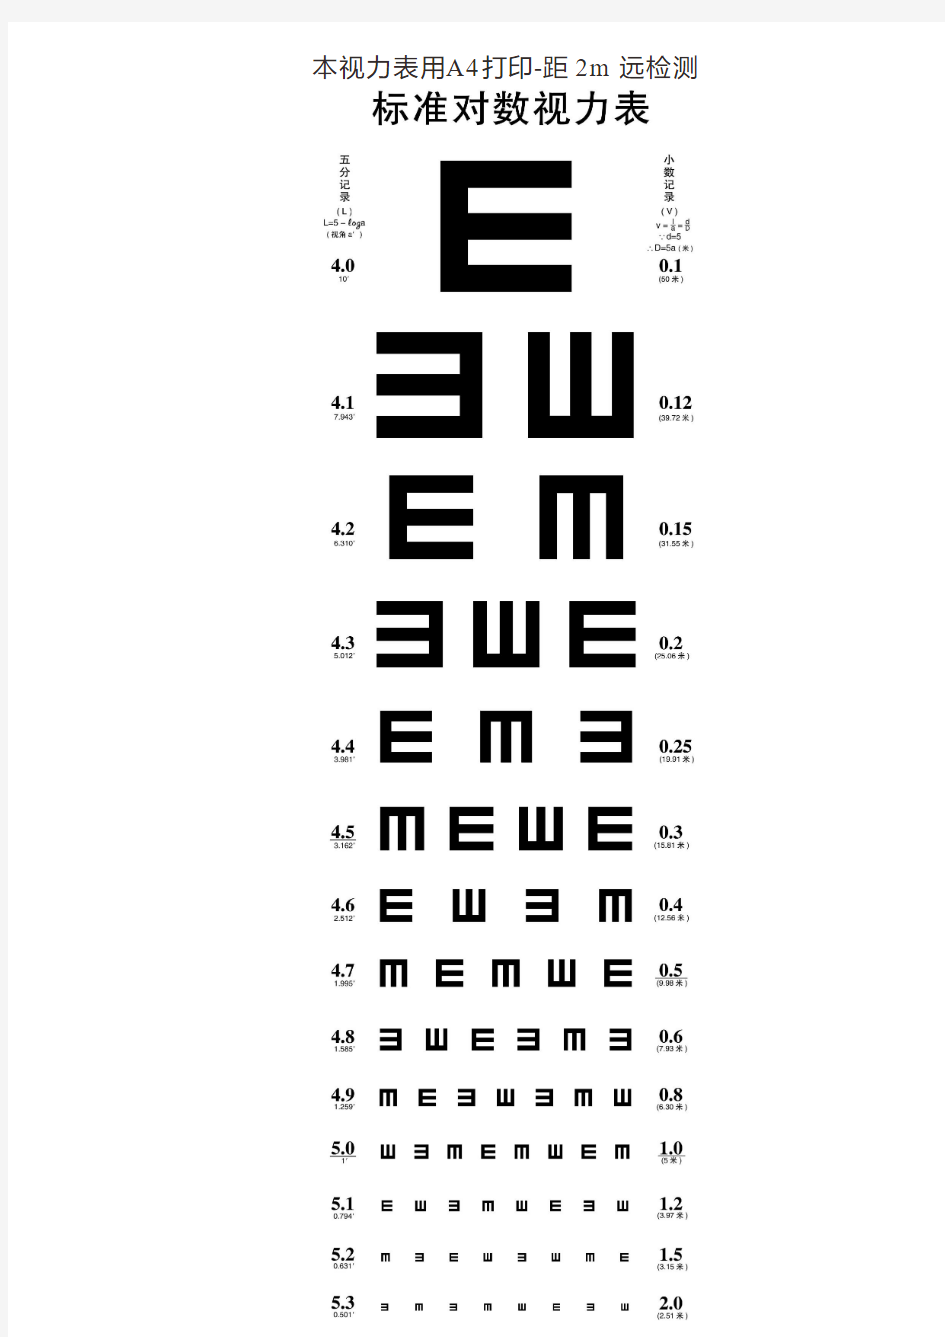 2.0m高清晰度标准视力表-A4直接打印